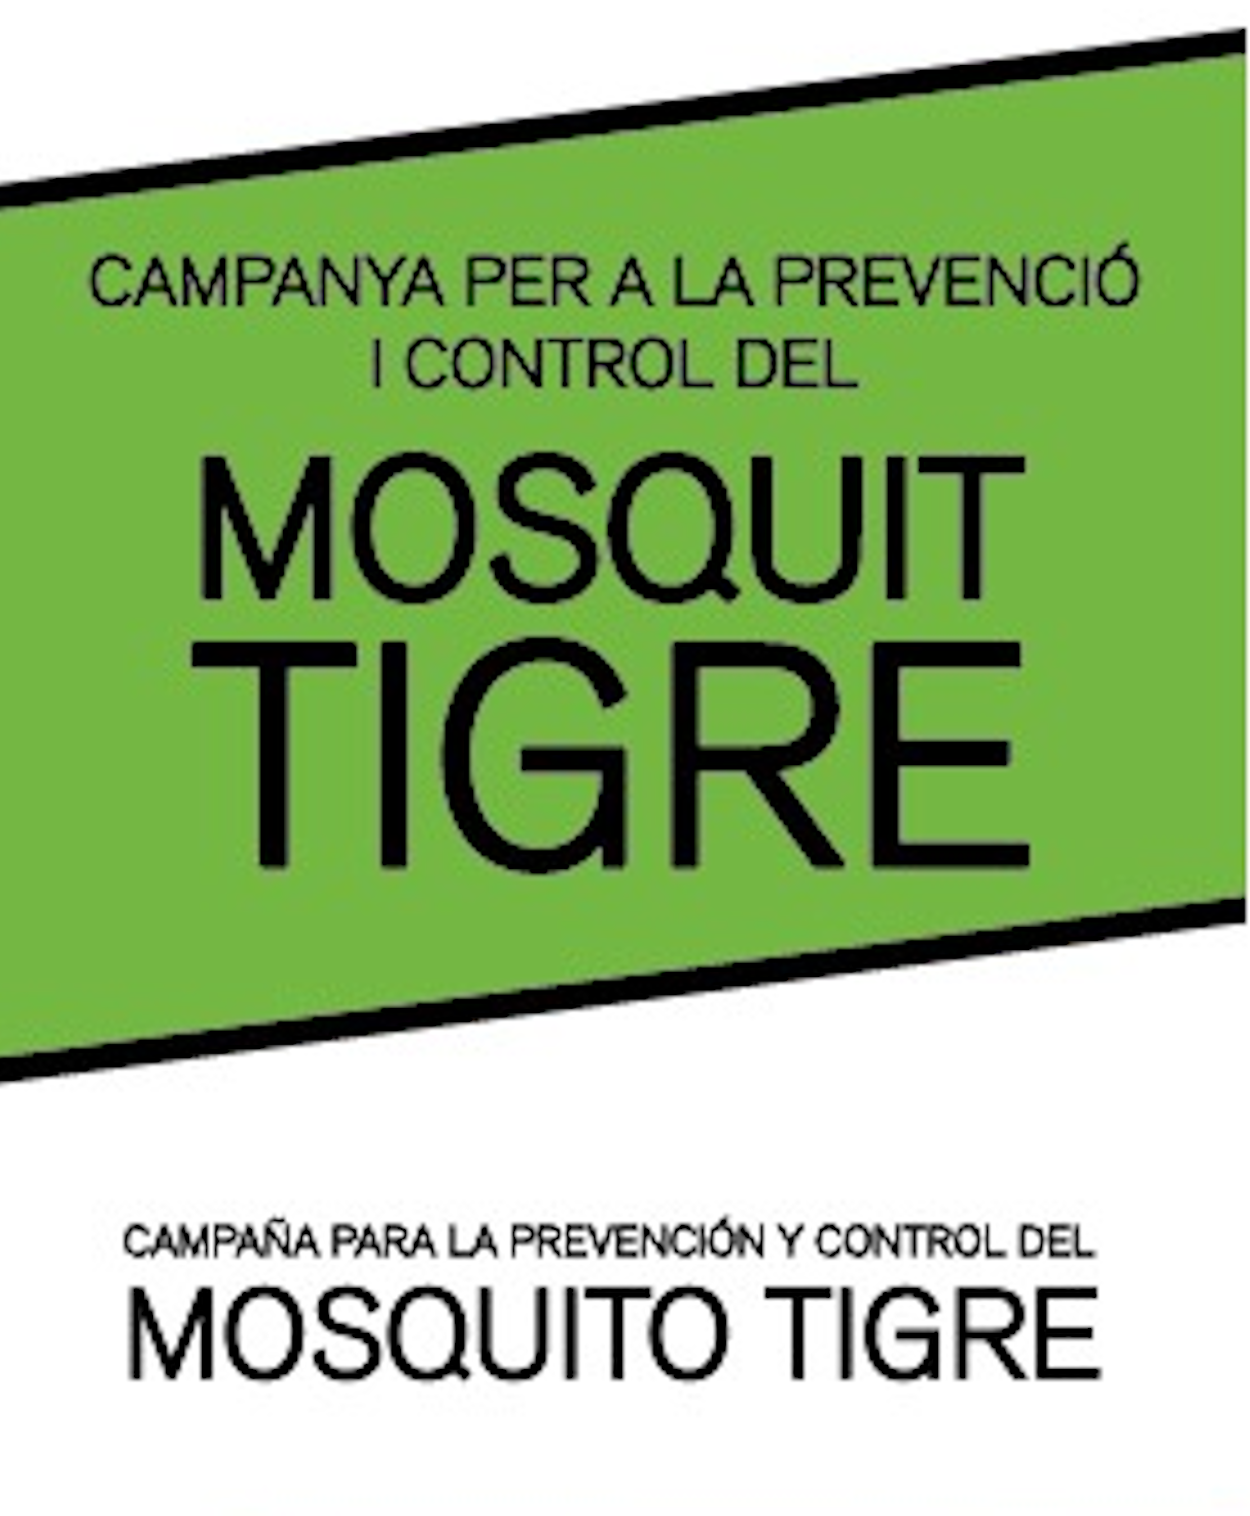 2020.05.12 Campanya a Canals per a la prevenció i control del mosquit tigre.